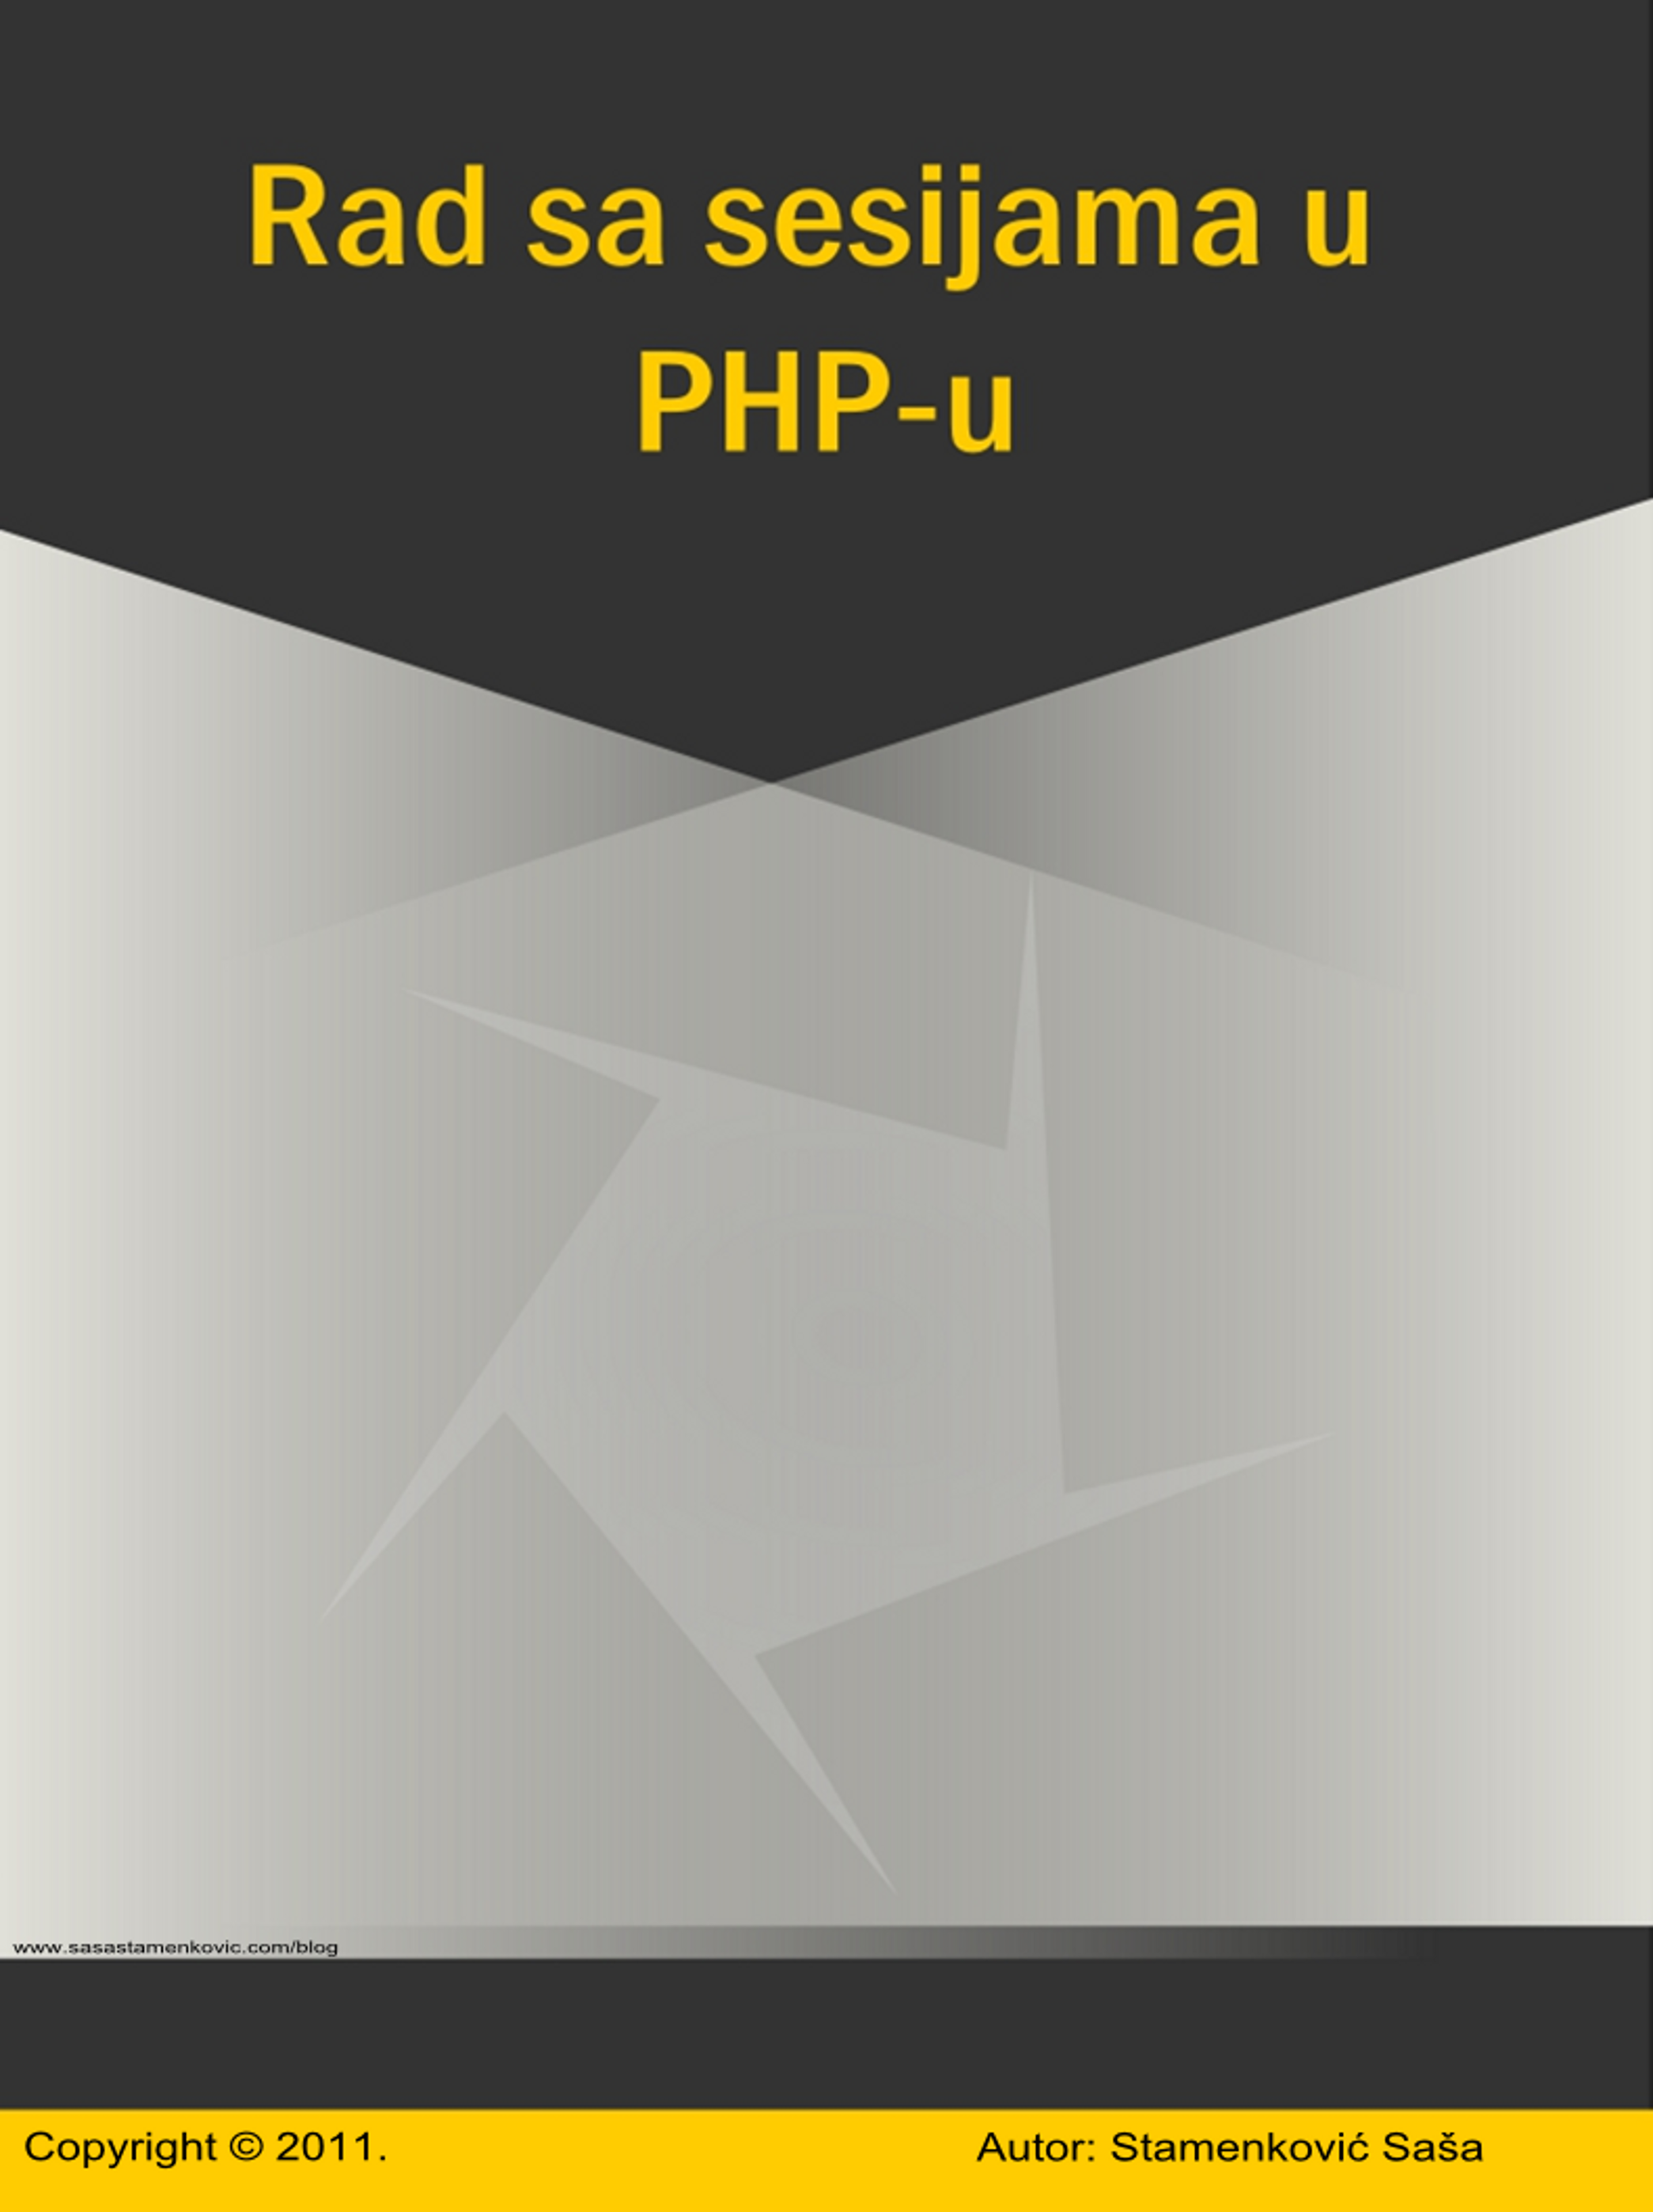 "Rad sa sesijama u PHP - u" icon